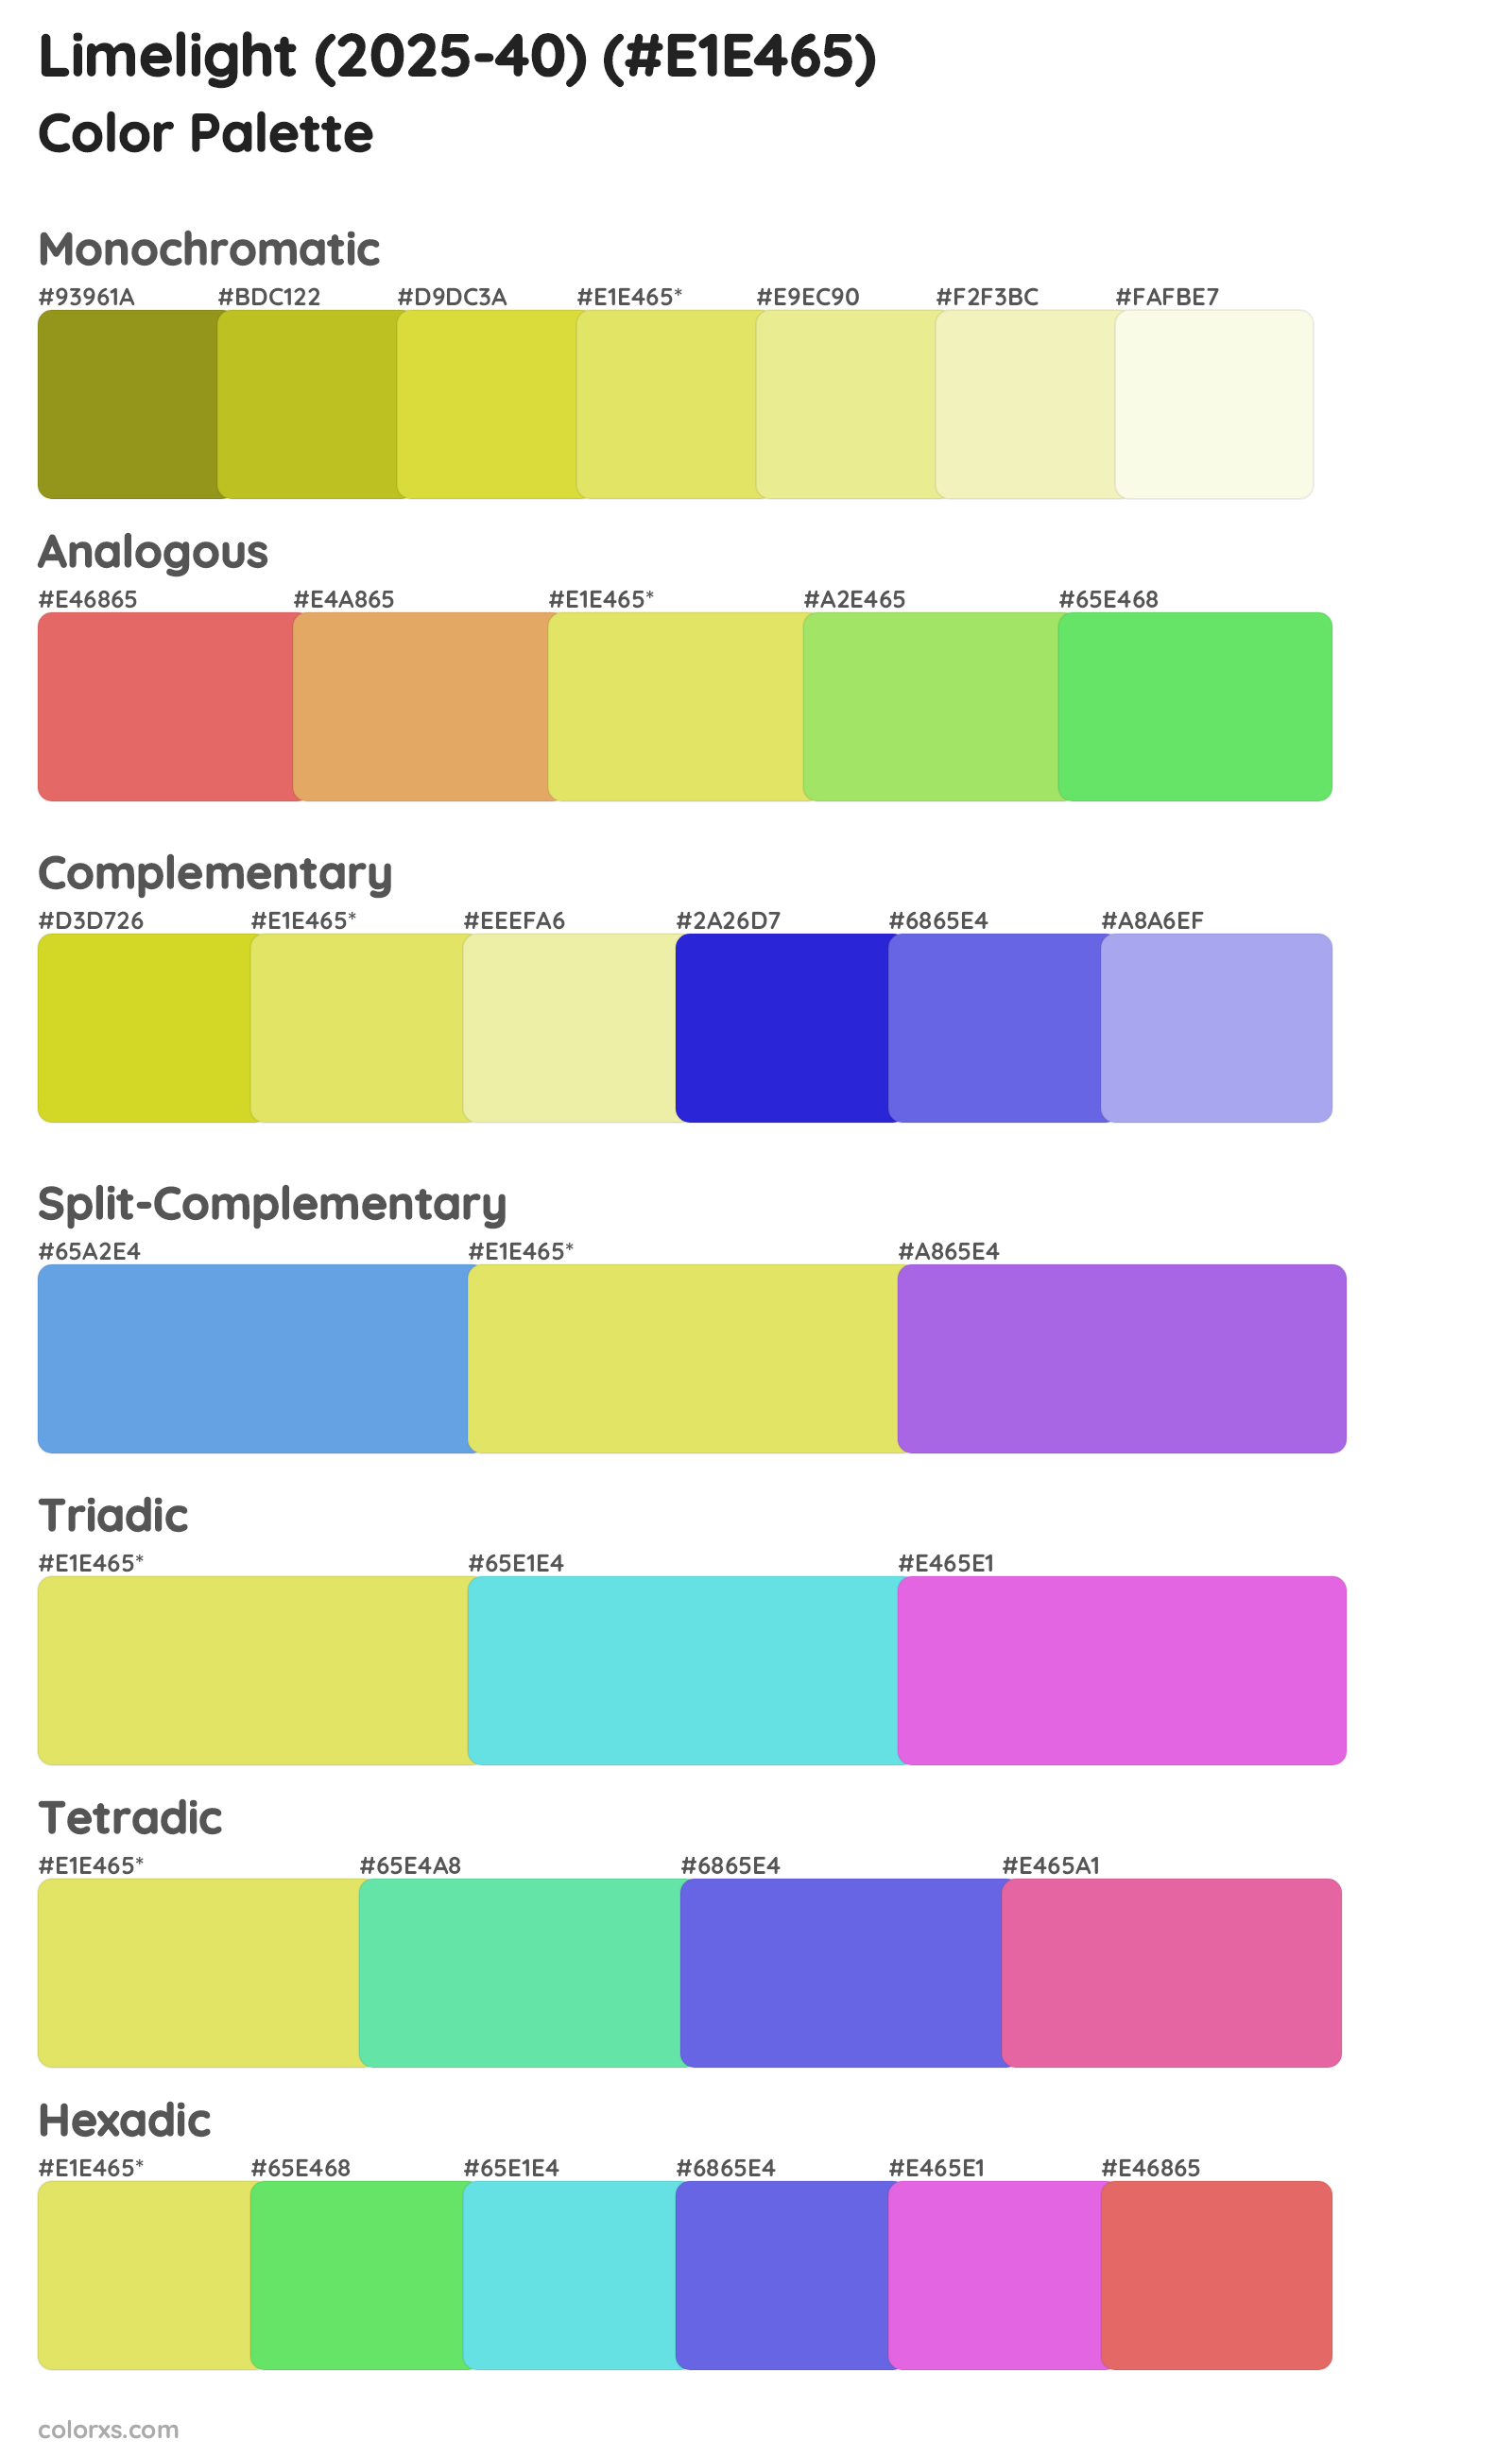 Limelight (2025-40) Color Scheme Palettes